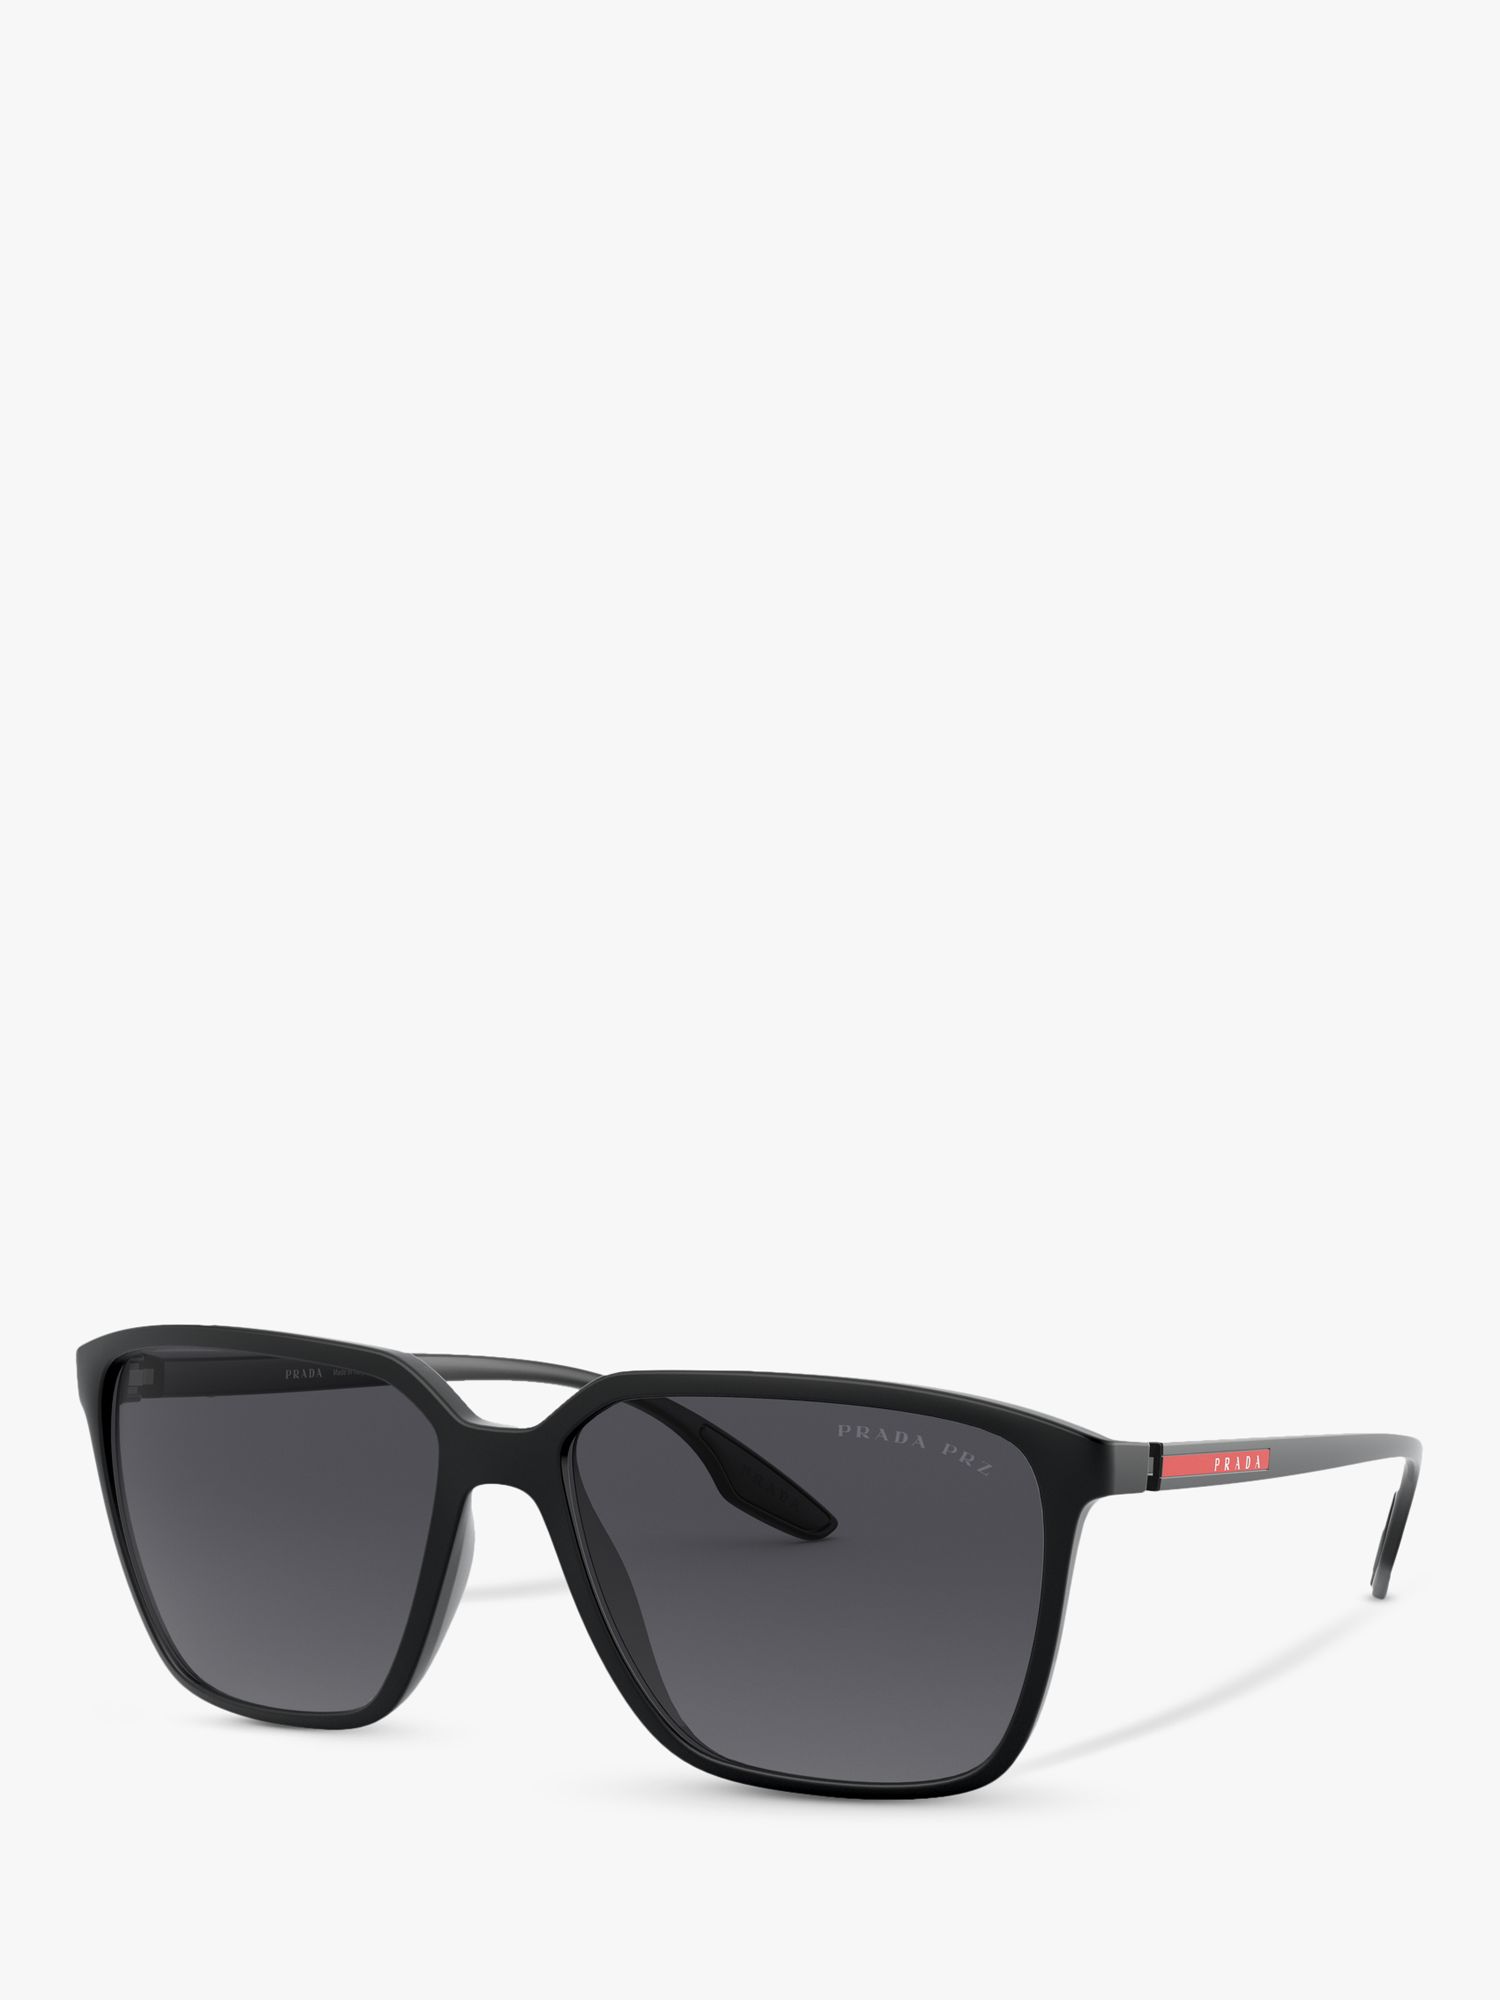 prada men's square sunglasses